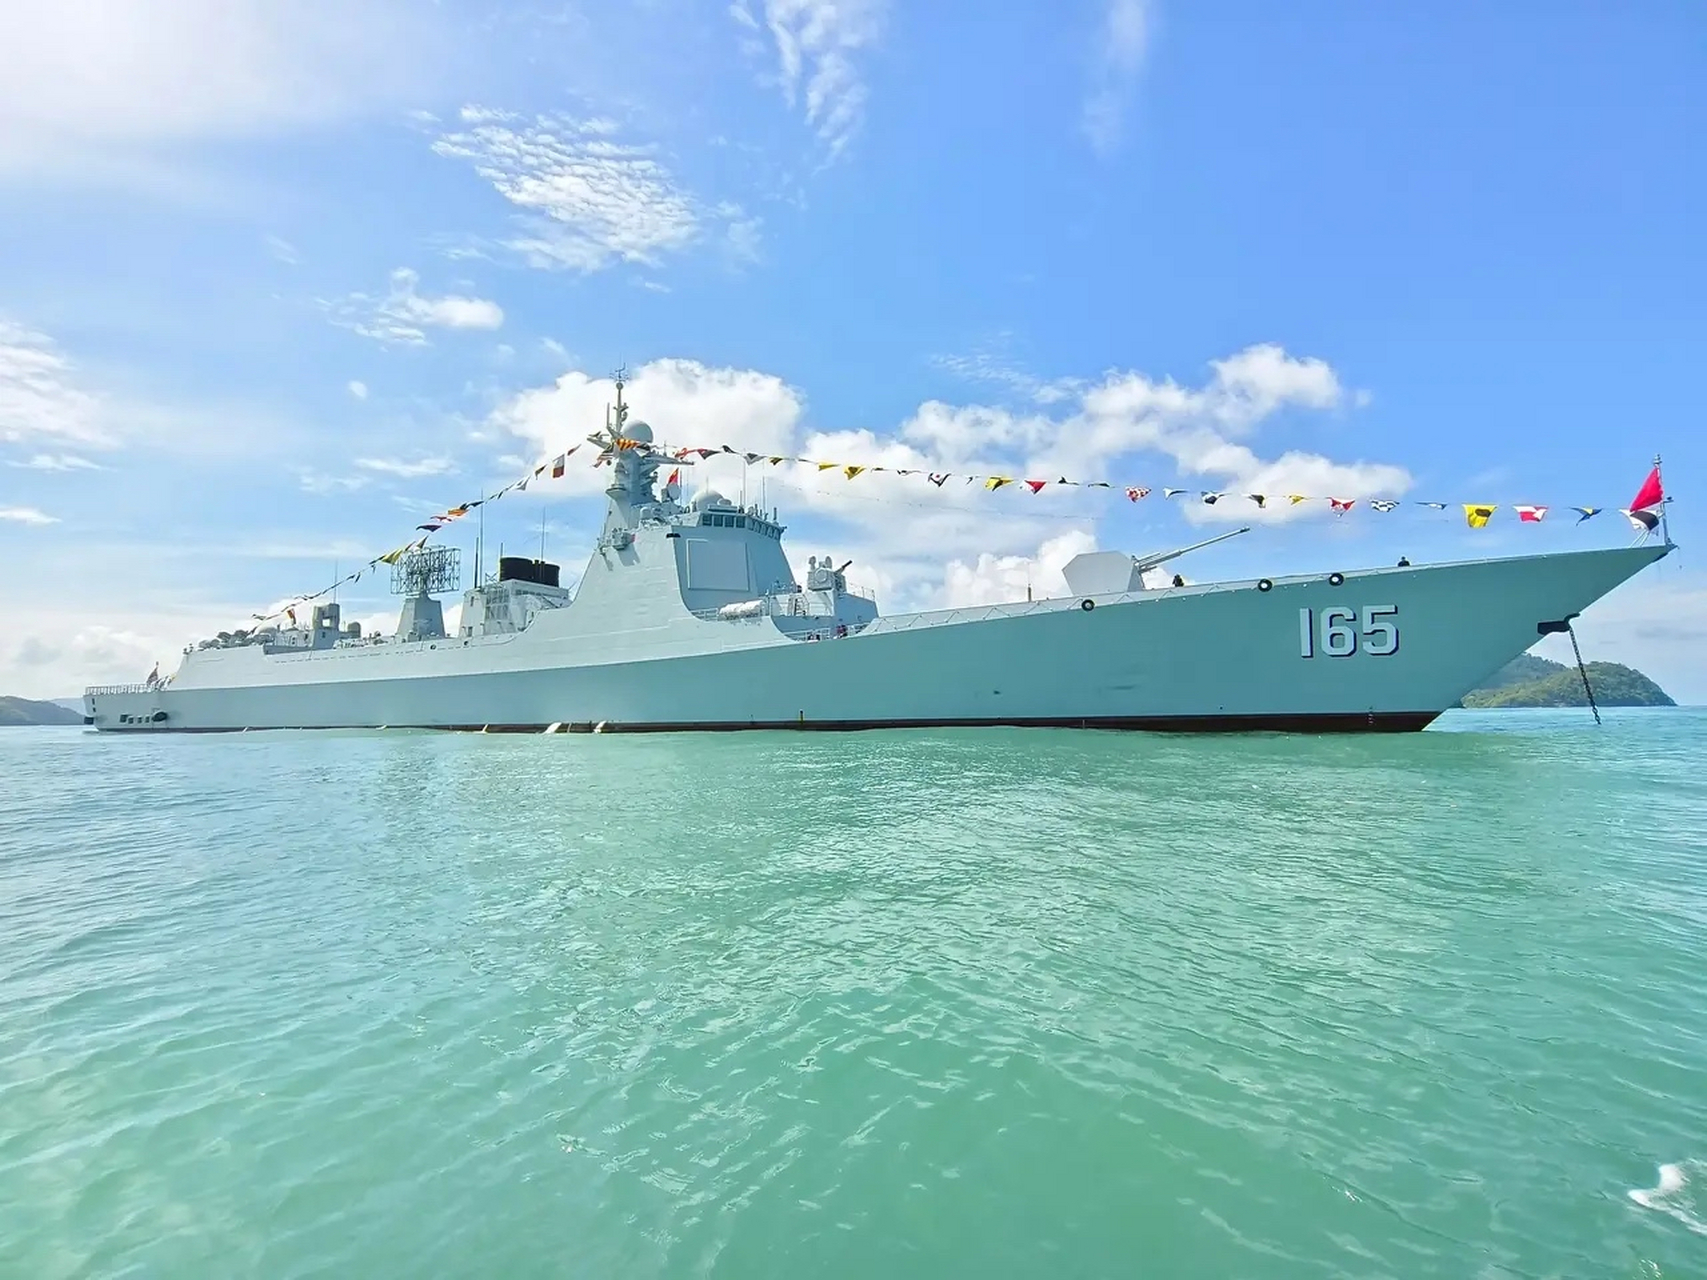 中国9899海军165湛江舰 052dg型驱逐舰 该舰于5月22日抵达